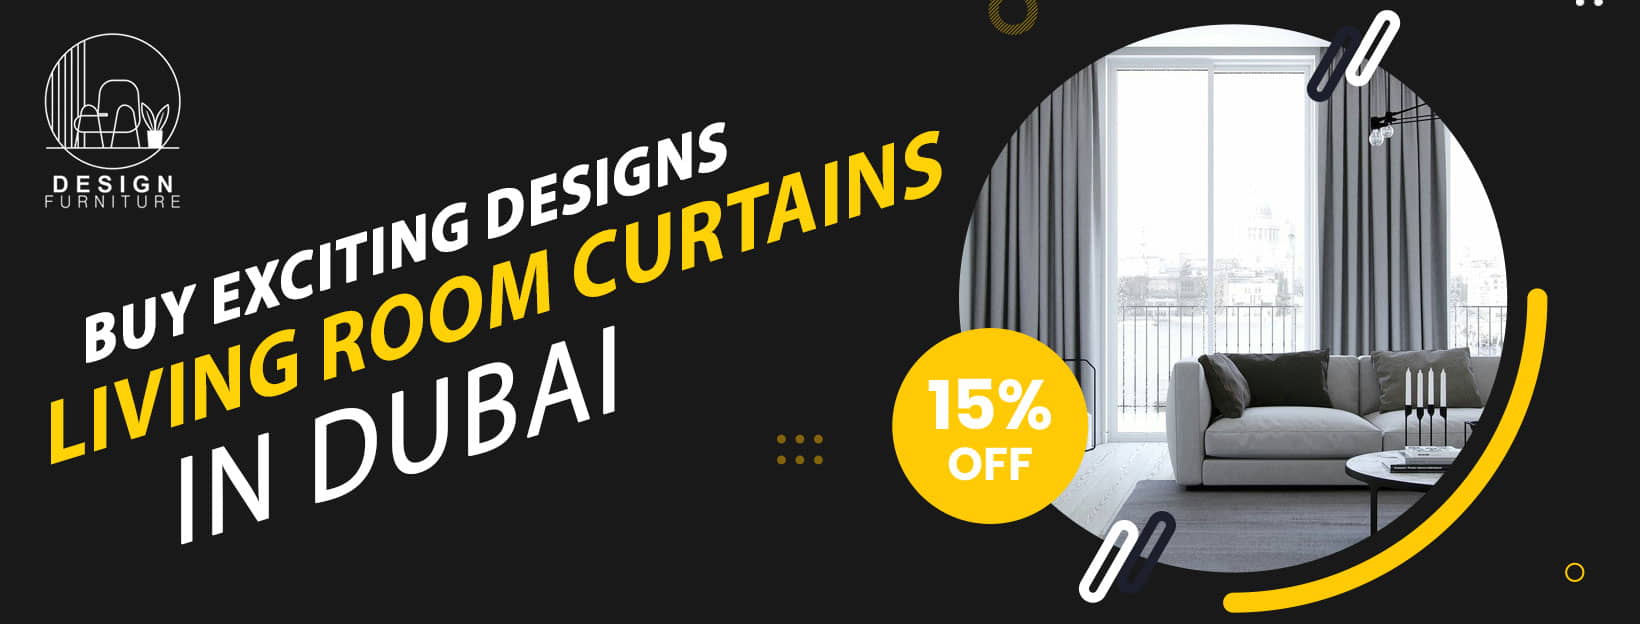 Buy-Living-Room-Curtains-In-UAE